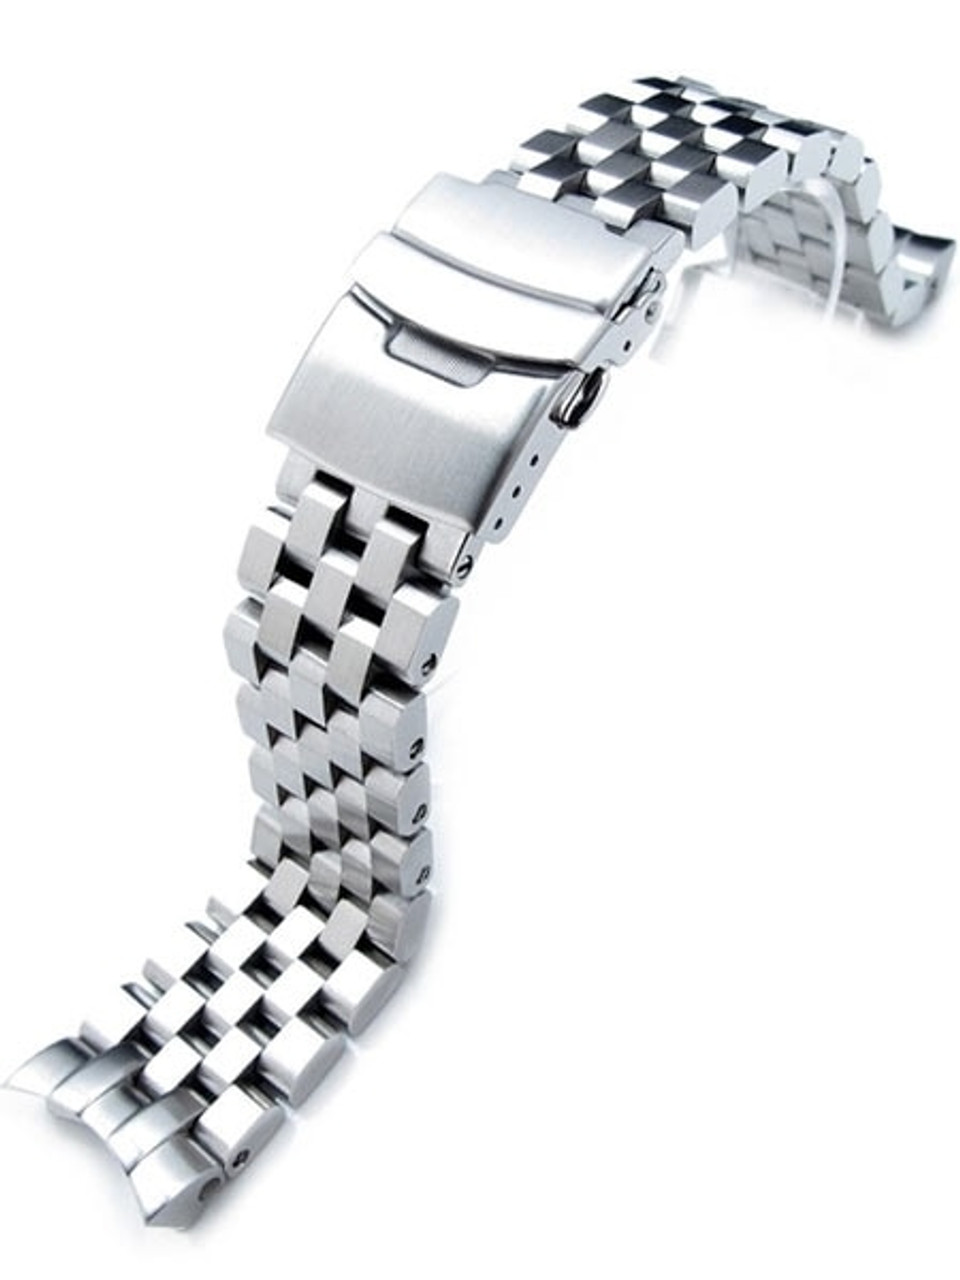 Engineer Morse Code Bracelet, Engineer Jewelry, Engineer Gift, Morse Code  Bracelet, Engineer Bracelet, Bracelet for Woman Man, Engineer Gift - Etsy